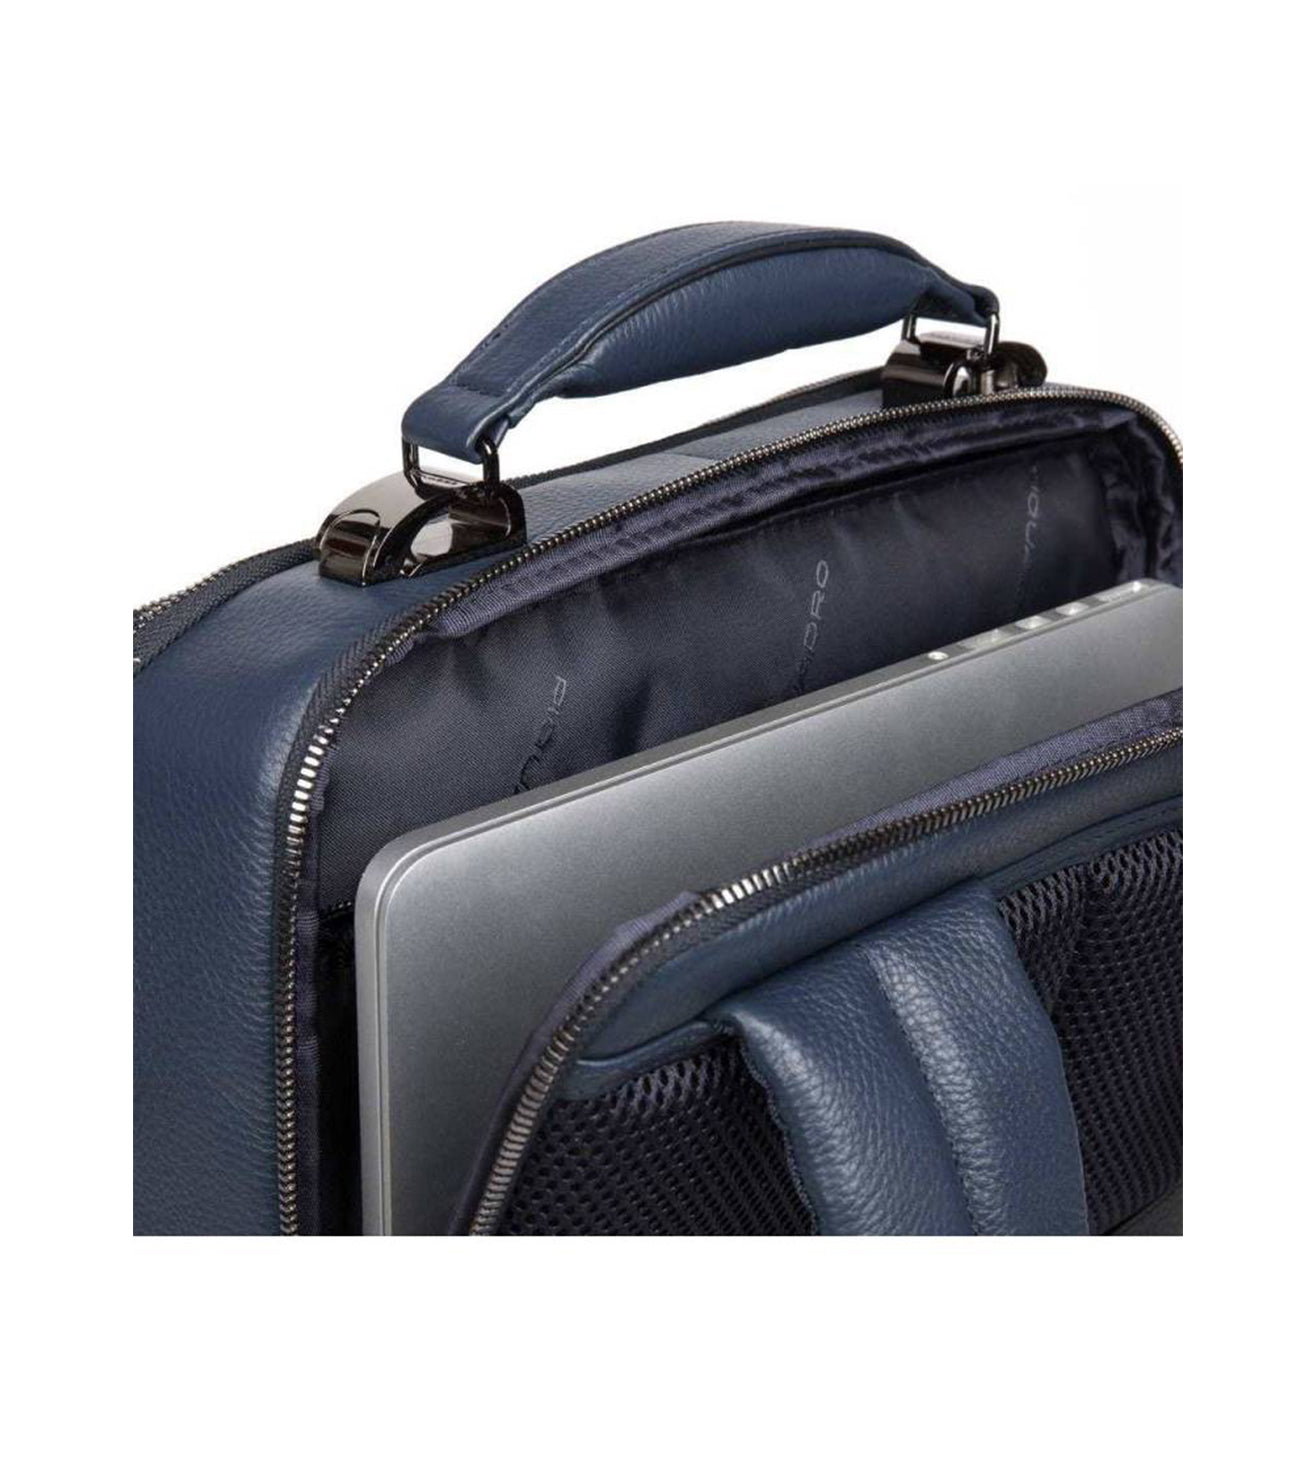 Piquadro Modus Special Men's Blue Laptop Backpack